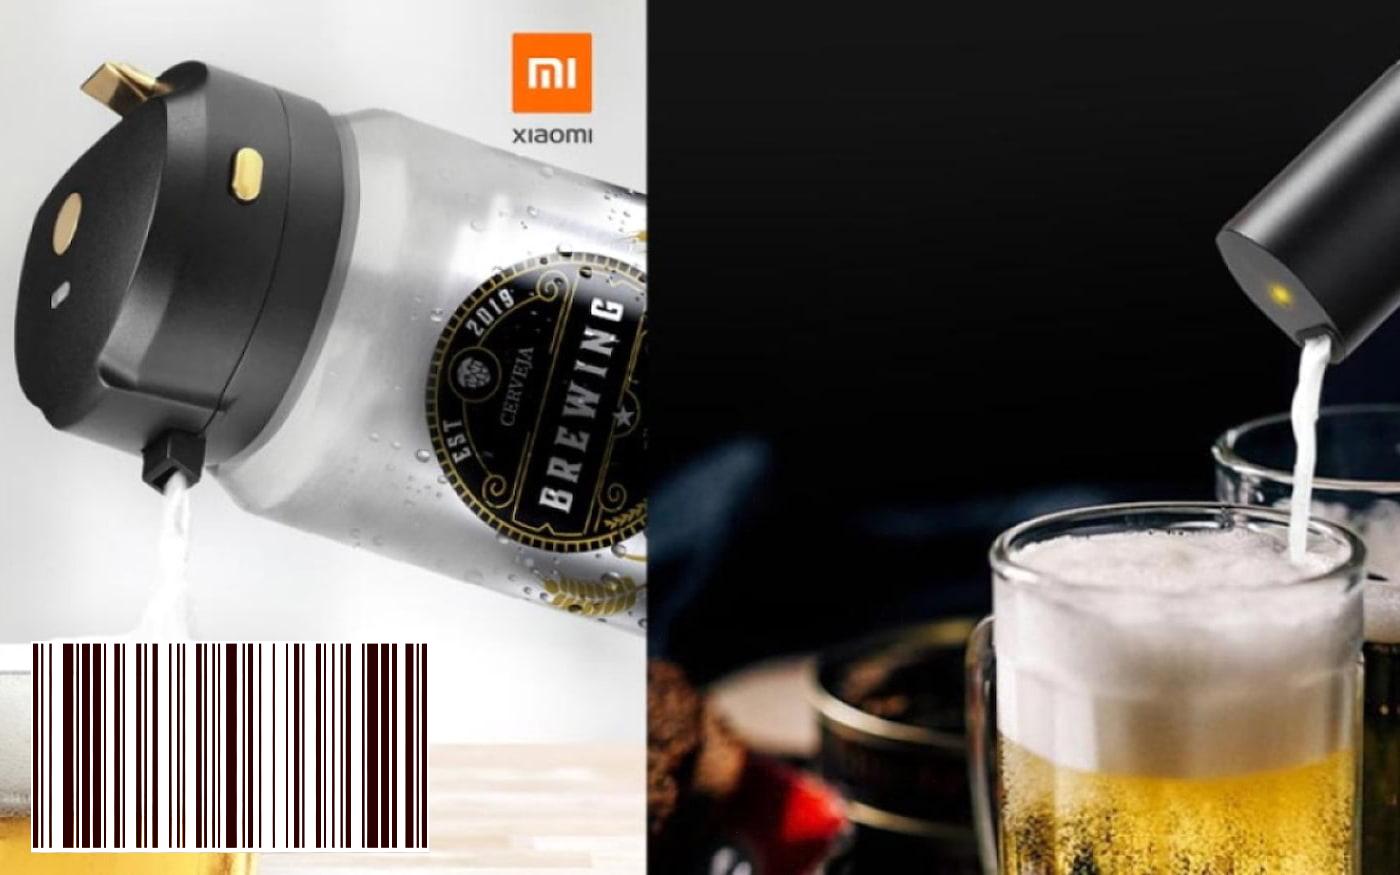 Xiaomi لانا في البرازيل لها برودة البيرة المحمولة! انها تتحول البيرة المعلبة والزجاجة في البيرة